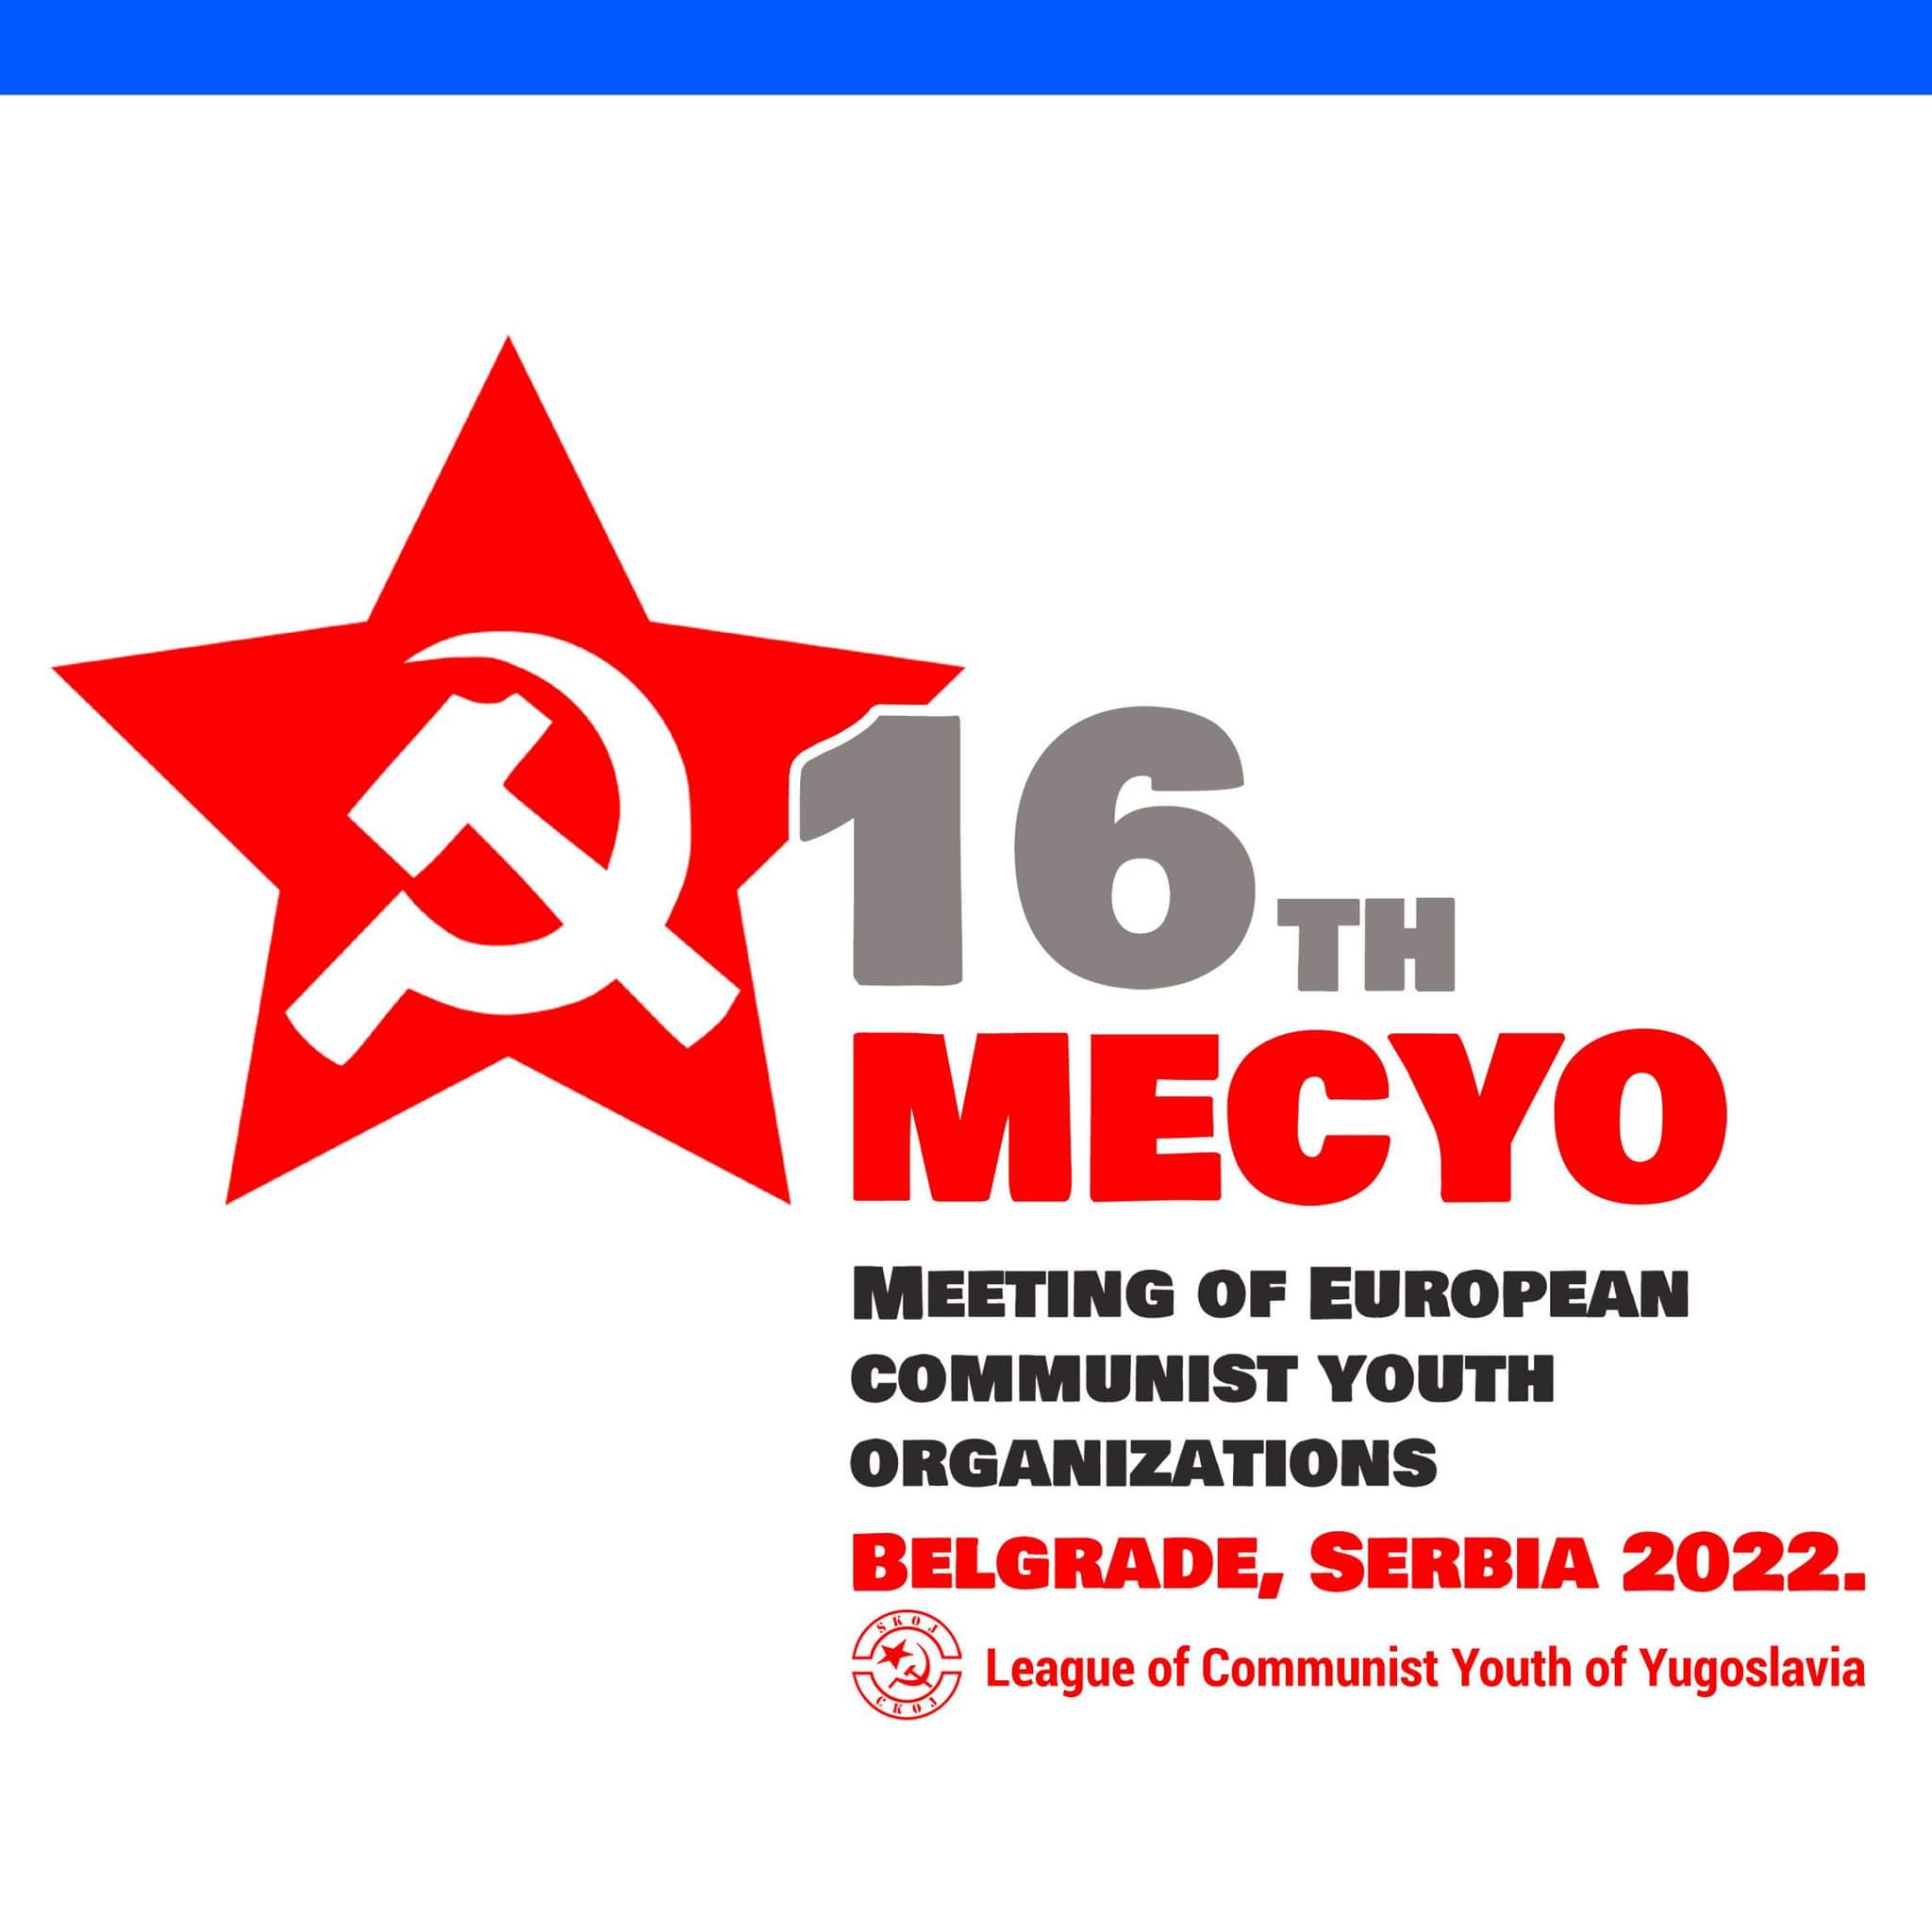 Κοινή Ανακοίνωση Κομμουνιστικών Νεολαιών μετά τη 16 Συνάντηση Ευρωπαϊκών Κομμουνιστικών Οργανώσεων Νεολαίας (ΣΕΚΟΝ)